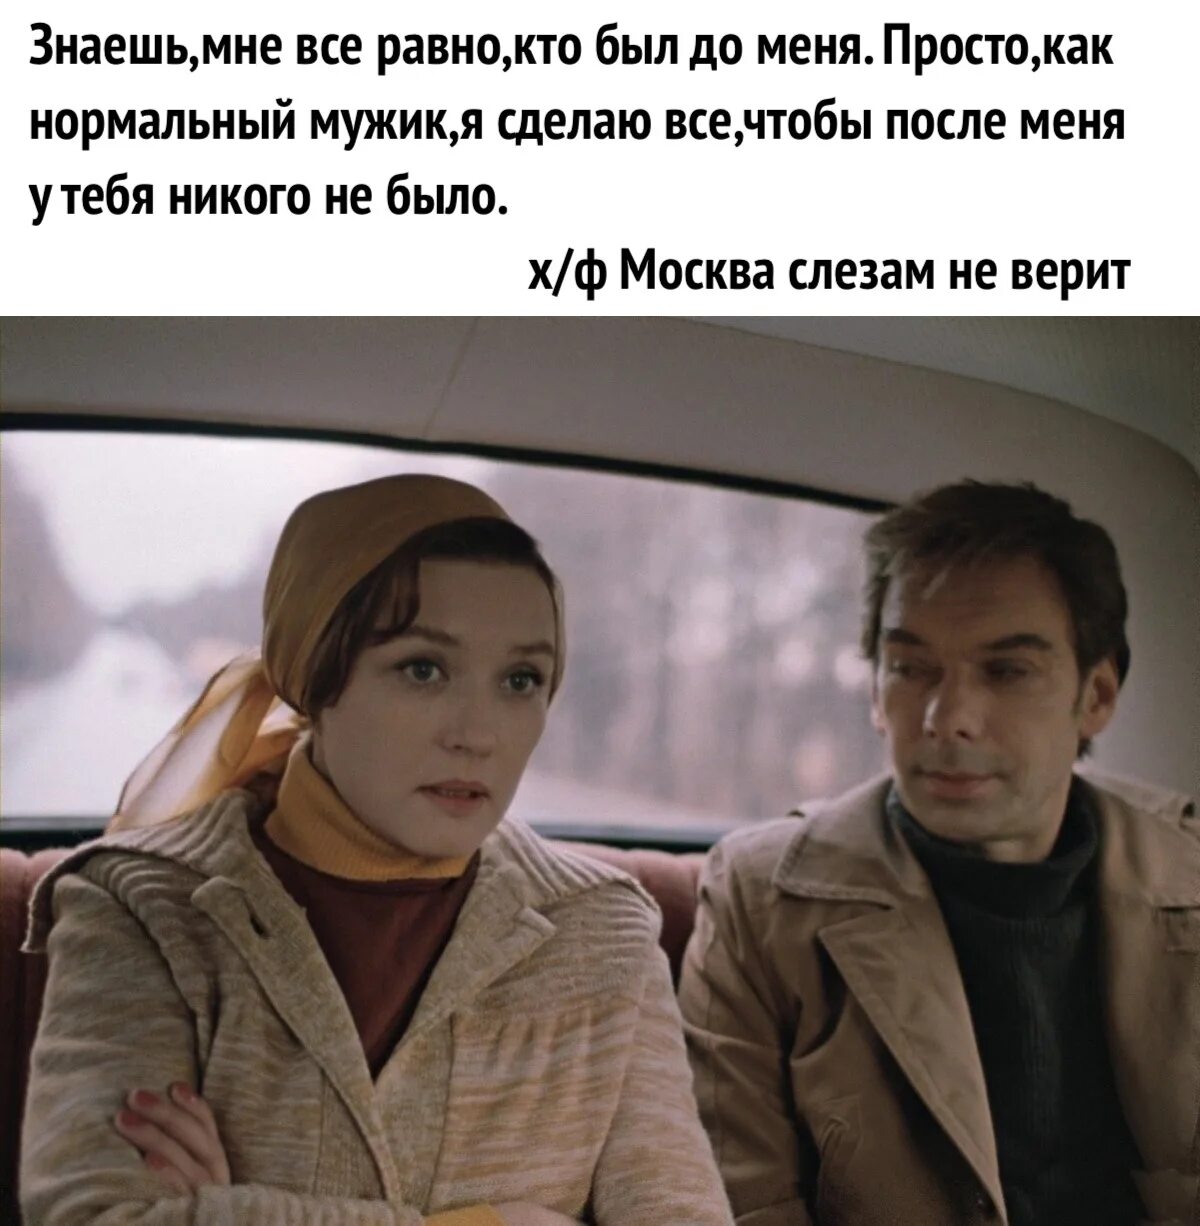 Цитаты из кинофильма Москва слезам не верит. Цитаты из Москва слезам не верит.